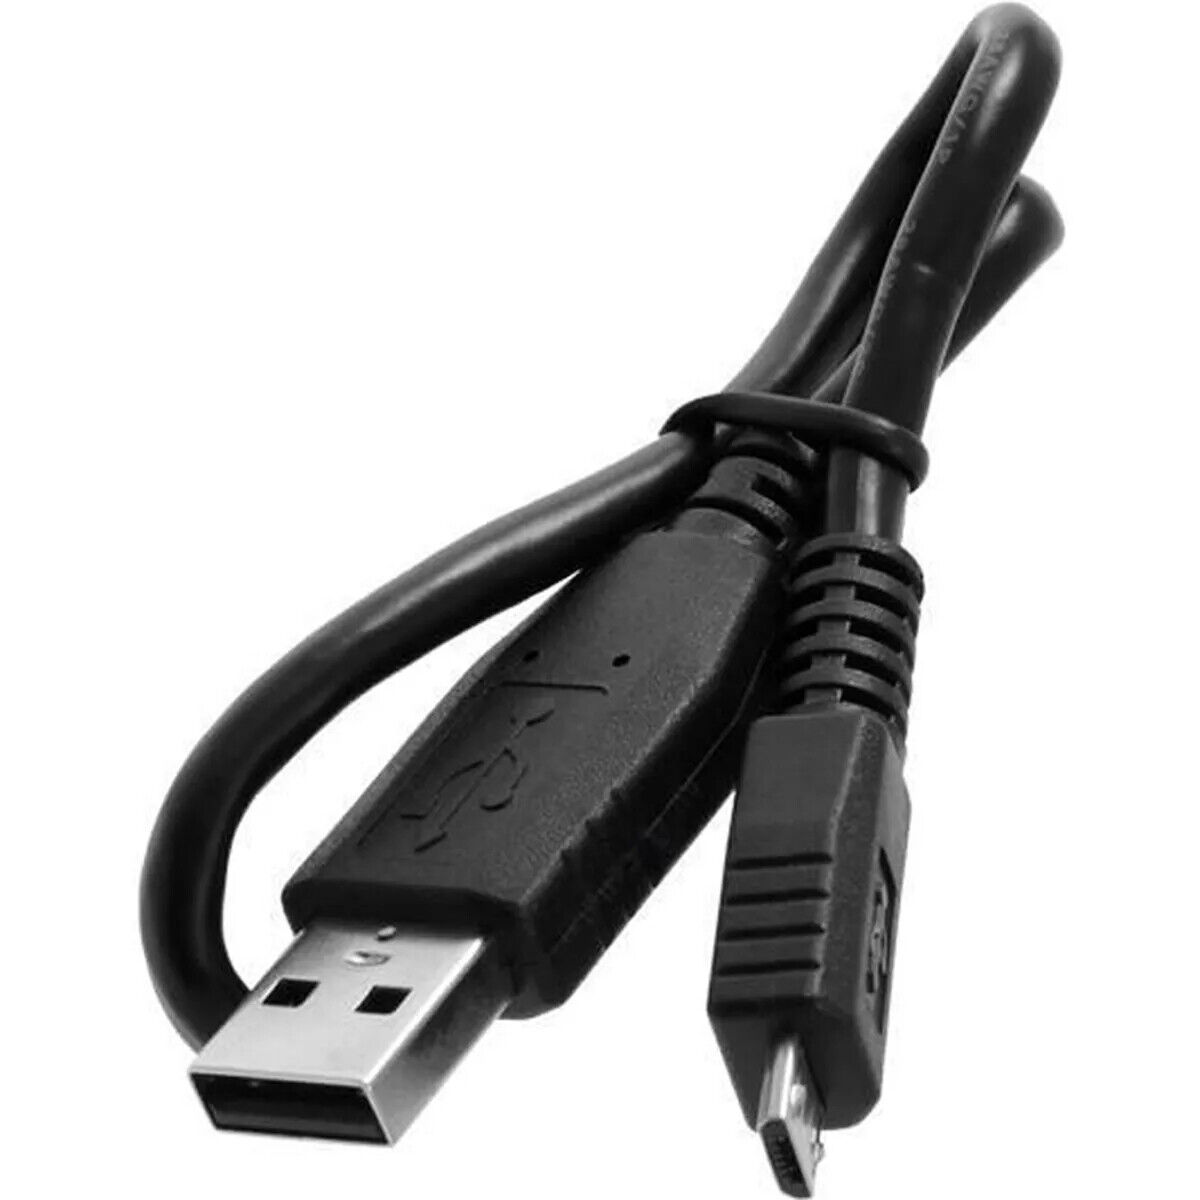 Recambio Cargador USB Cable para TomTom GPS 4AT0.002.00 seminuevo ENVIO GRATIS